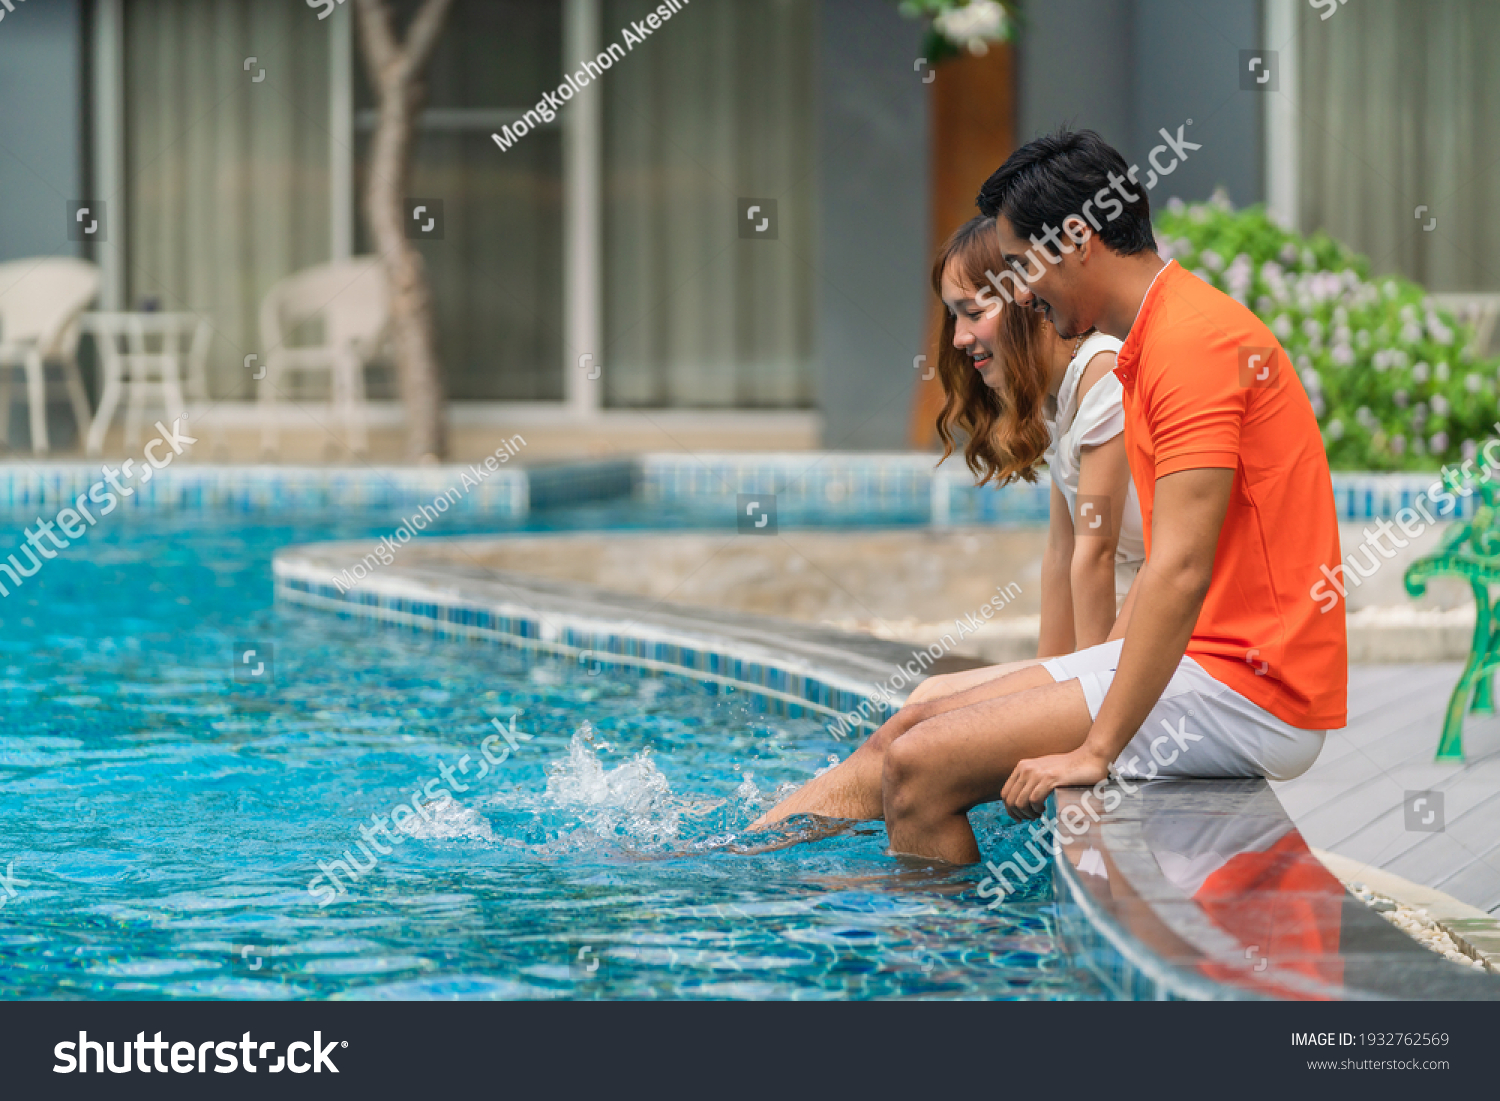 danielle piceno recommends Couple Pool Pics